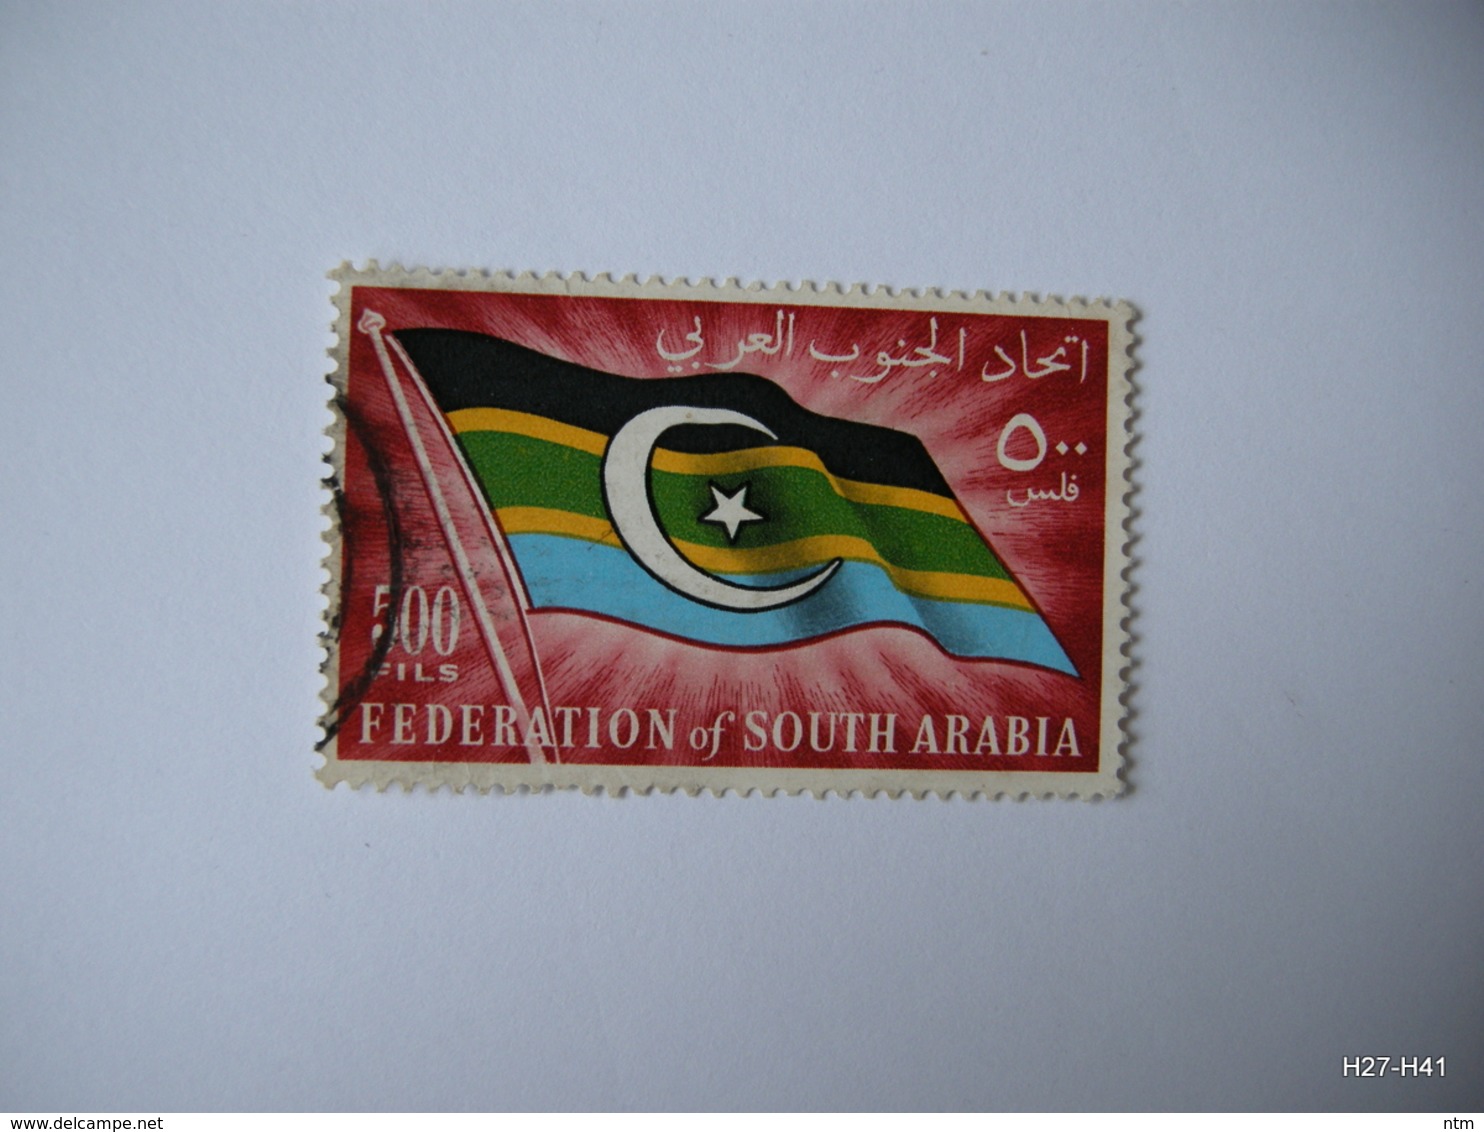 FEDERATION OF SOUTH ARABIA 1965. Federal Flag. 500 Fils. SG 15. Used. - Yemen